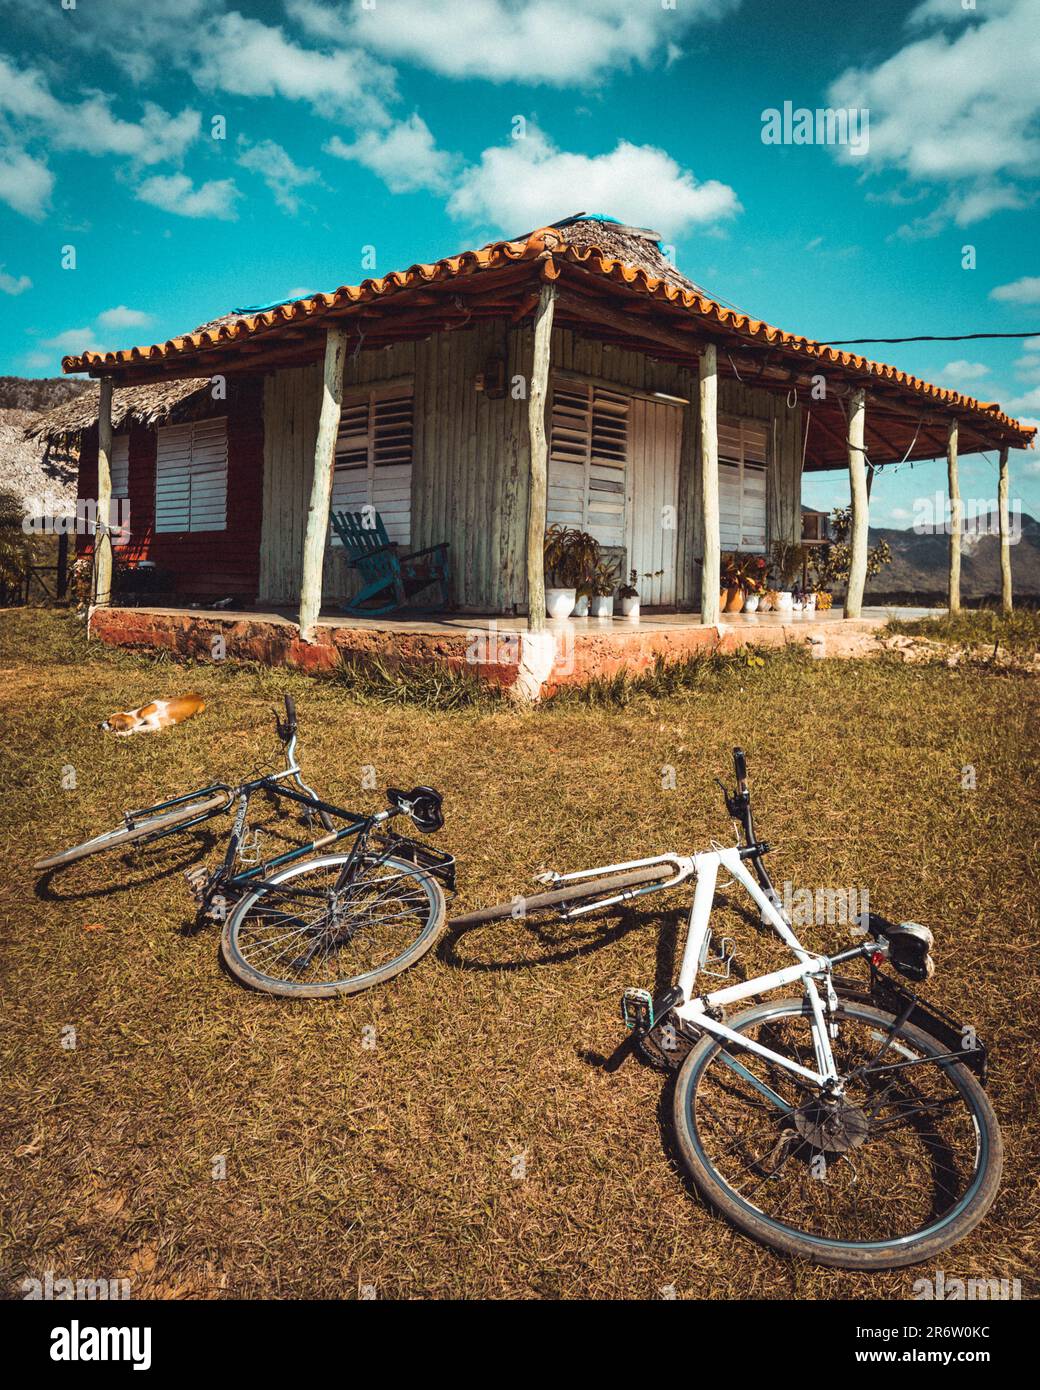 Fahrräder lehnen sich an ein typisch kubanisches Bauernhaus, das die Einfachheit und den Charme des ländlichen Lebens verkörpert. Ein Einblick in die entspannten Rhythmen und Stockfoto